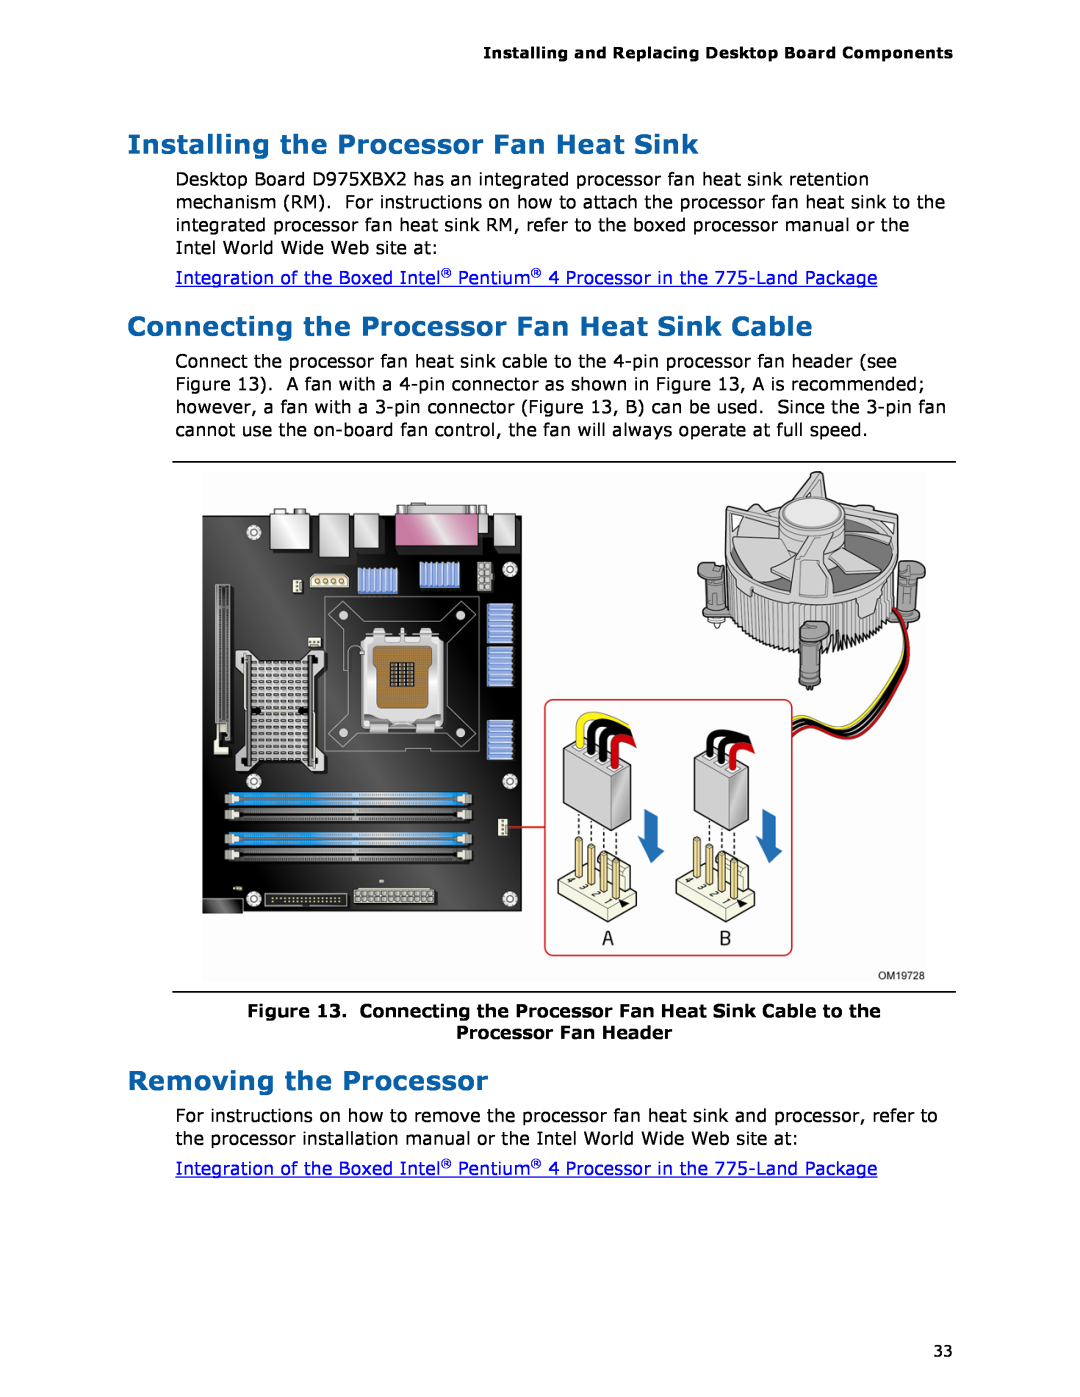 Intel D975XBX2 Installing the Processor Fan Heat Sink, Connecting the Processor Fan Heat Sink Cable, Processor Fan Header 